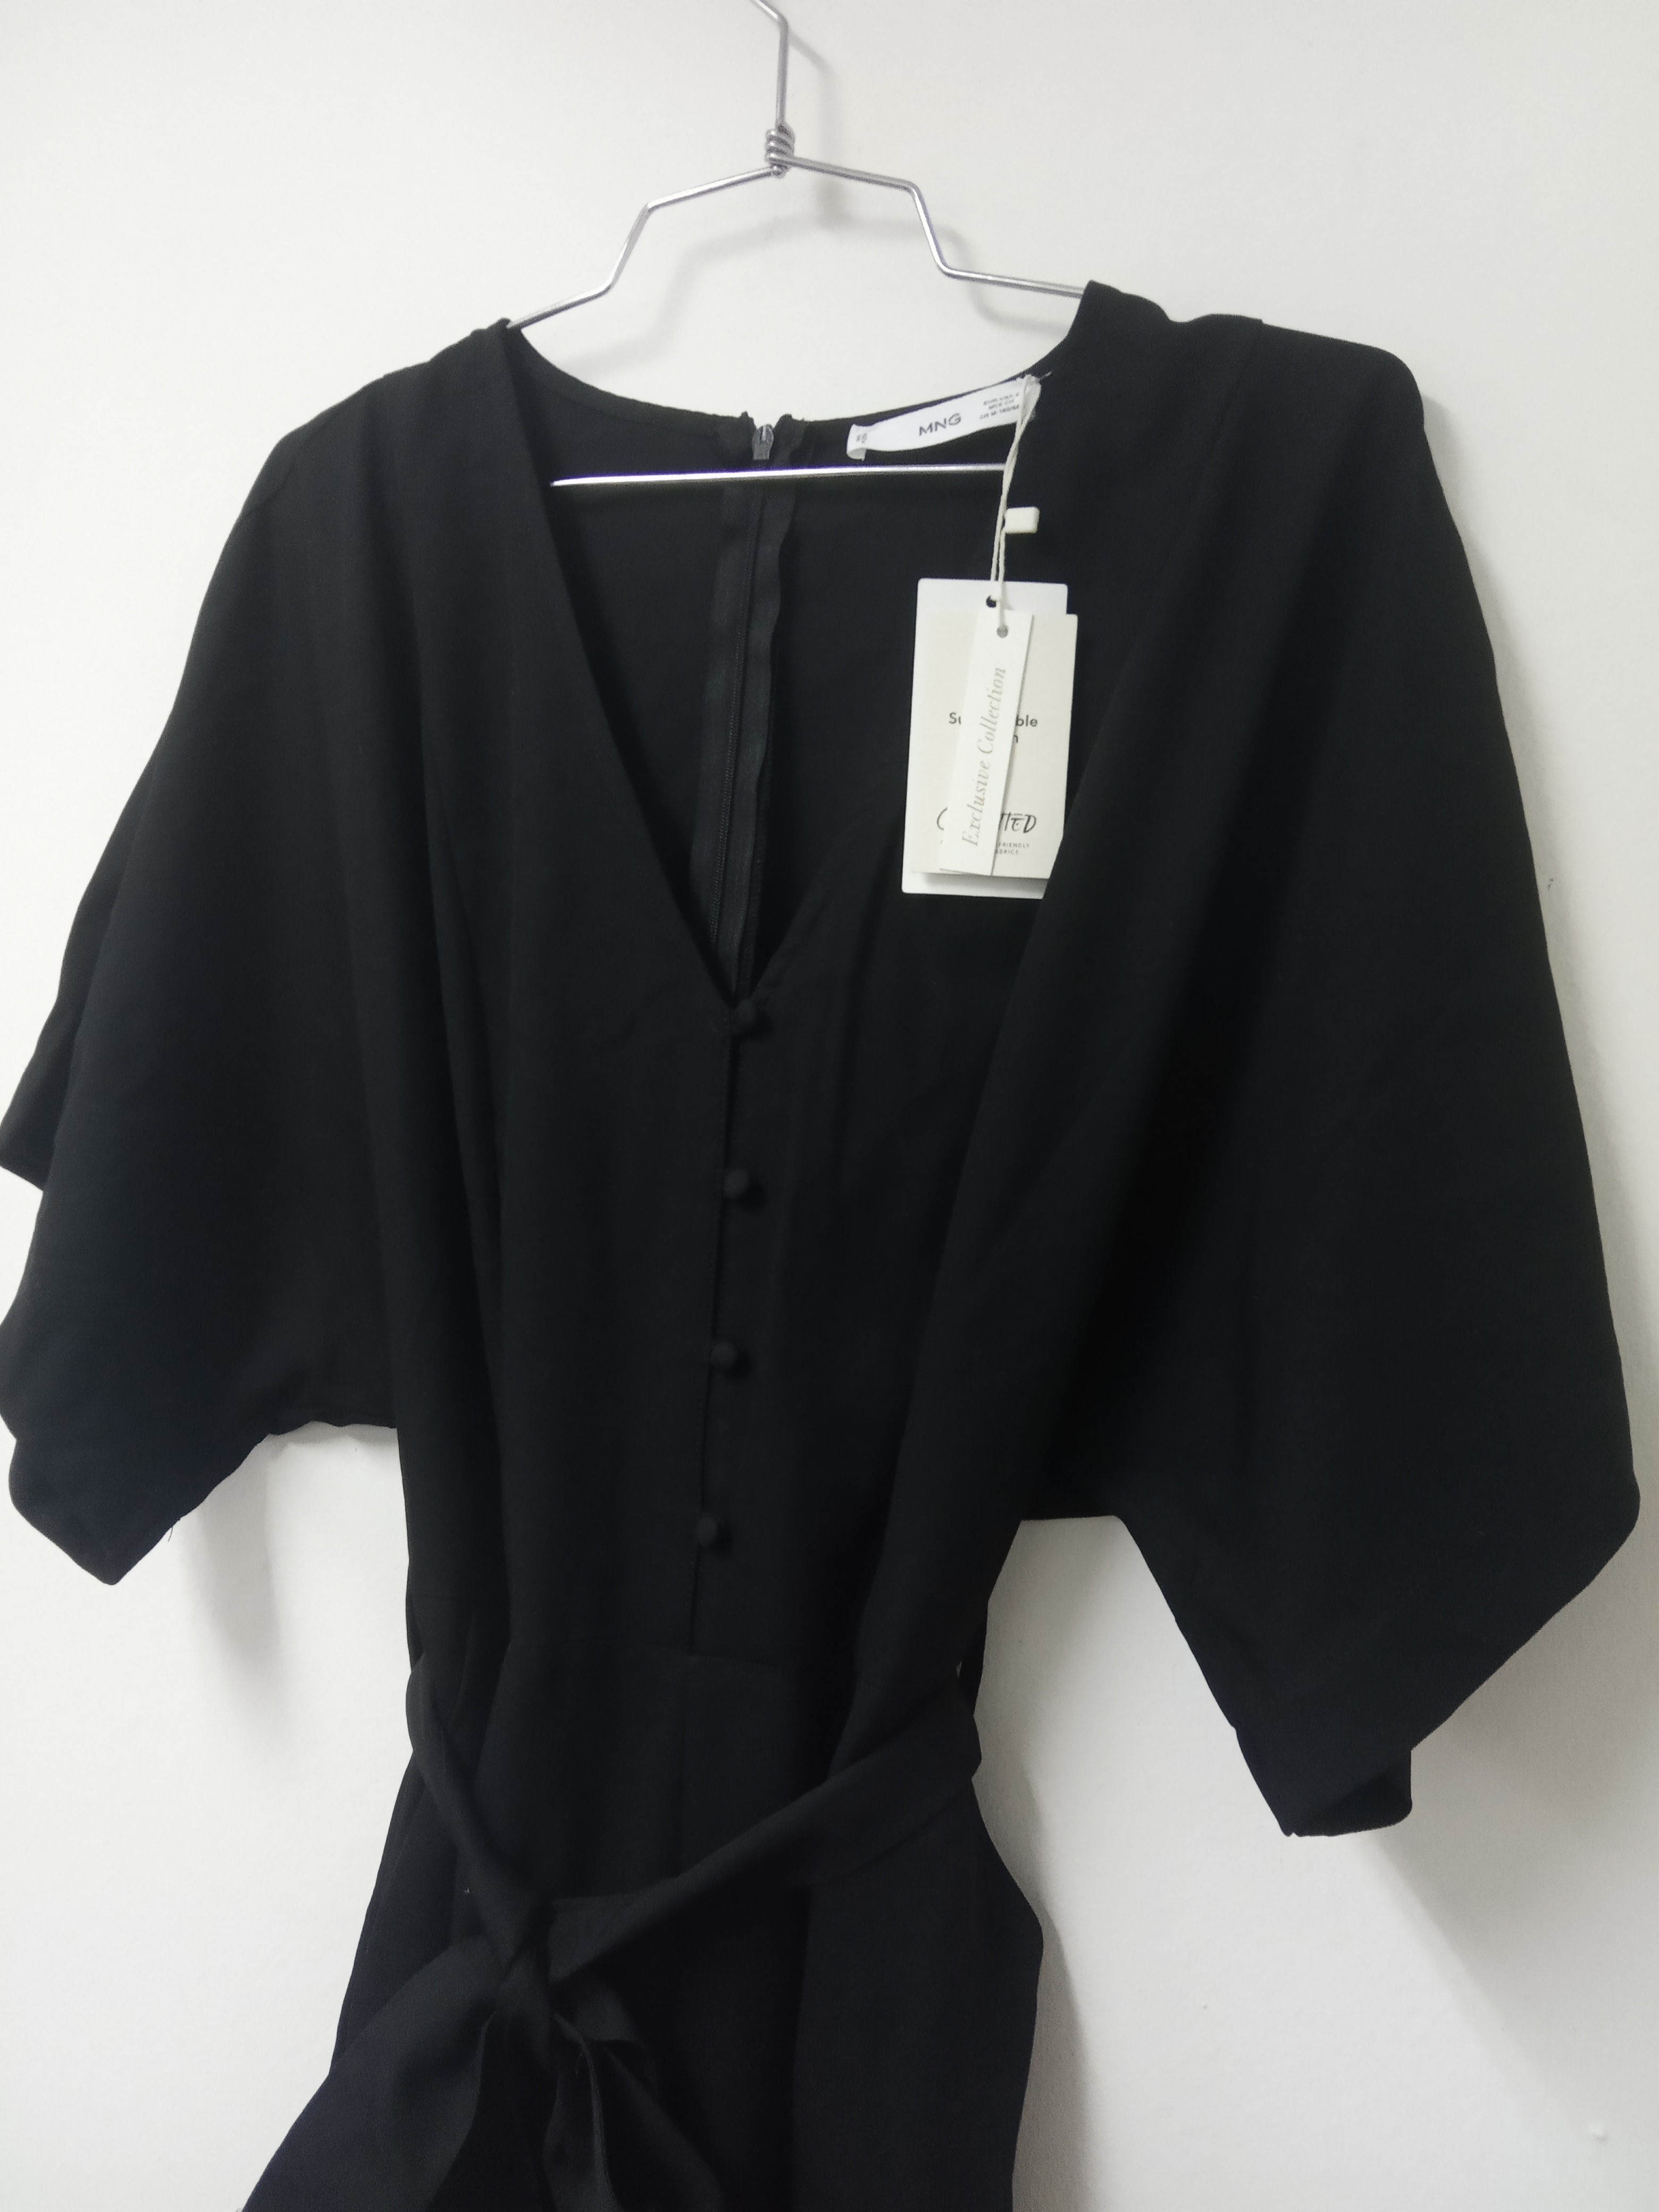 תמונה 5 ,אוברול מנגו שחור חדש סמול למכירה בתל אביב ביגוד ואביזרים  שמלות וחליפות